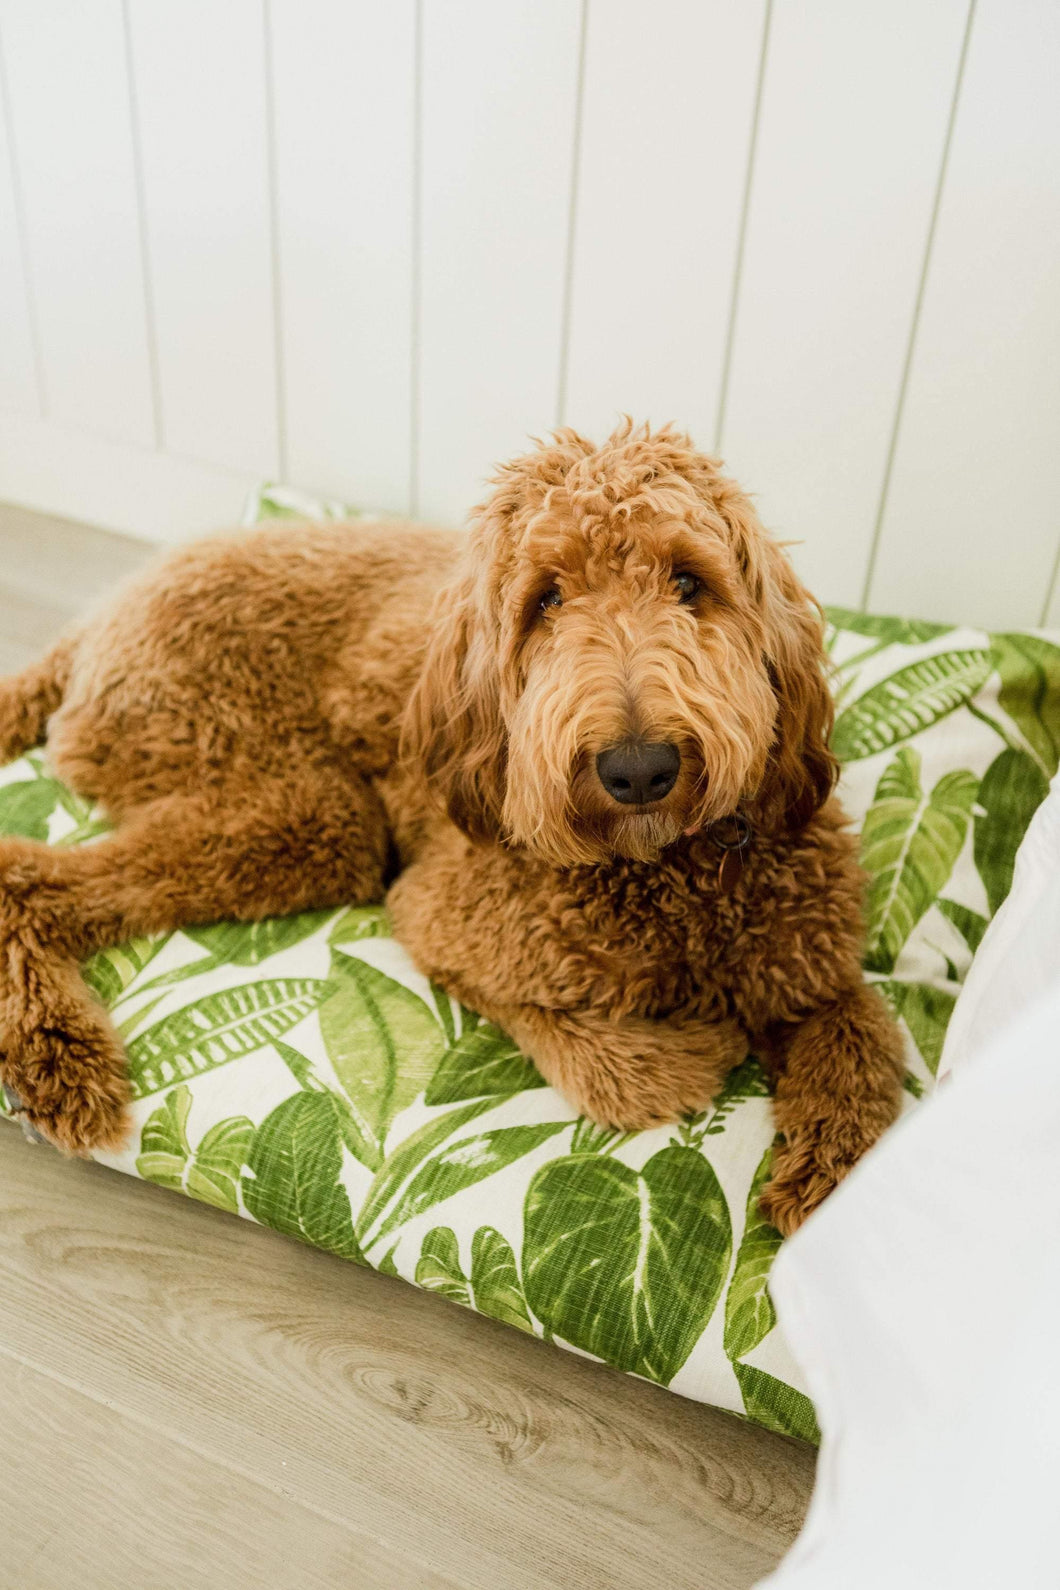 Boho Dog Bed Cover - Dog Beds - Personalized Dog Bed - Leaf Dog Bed - Pet Beds - Farmhouse Dog Bed Cover - ALL SIZES - Washable